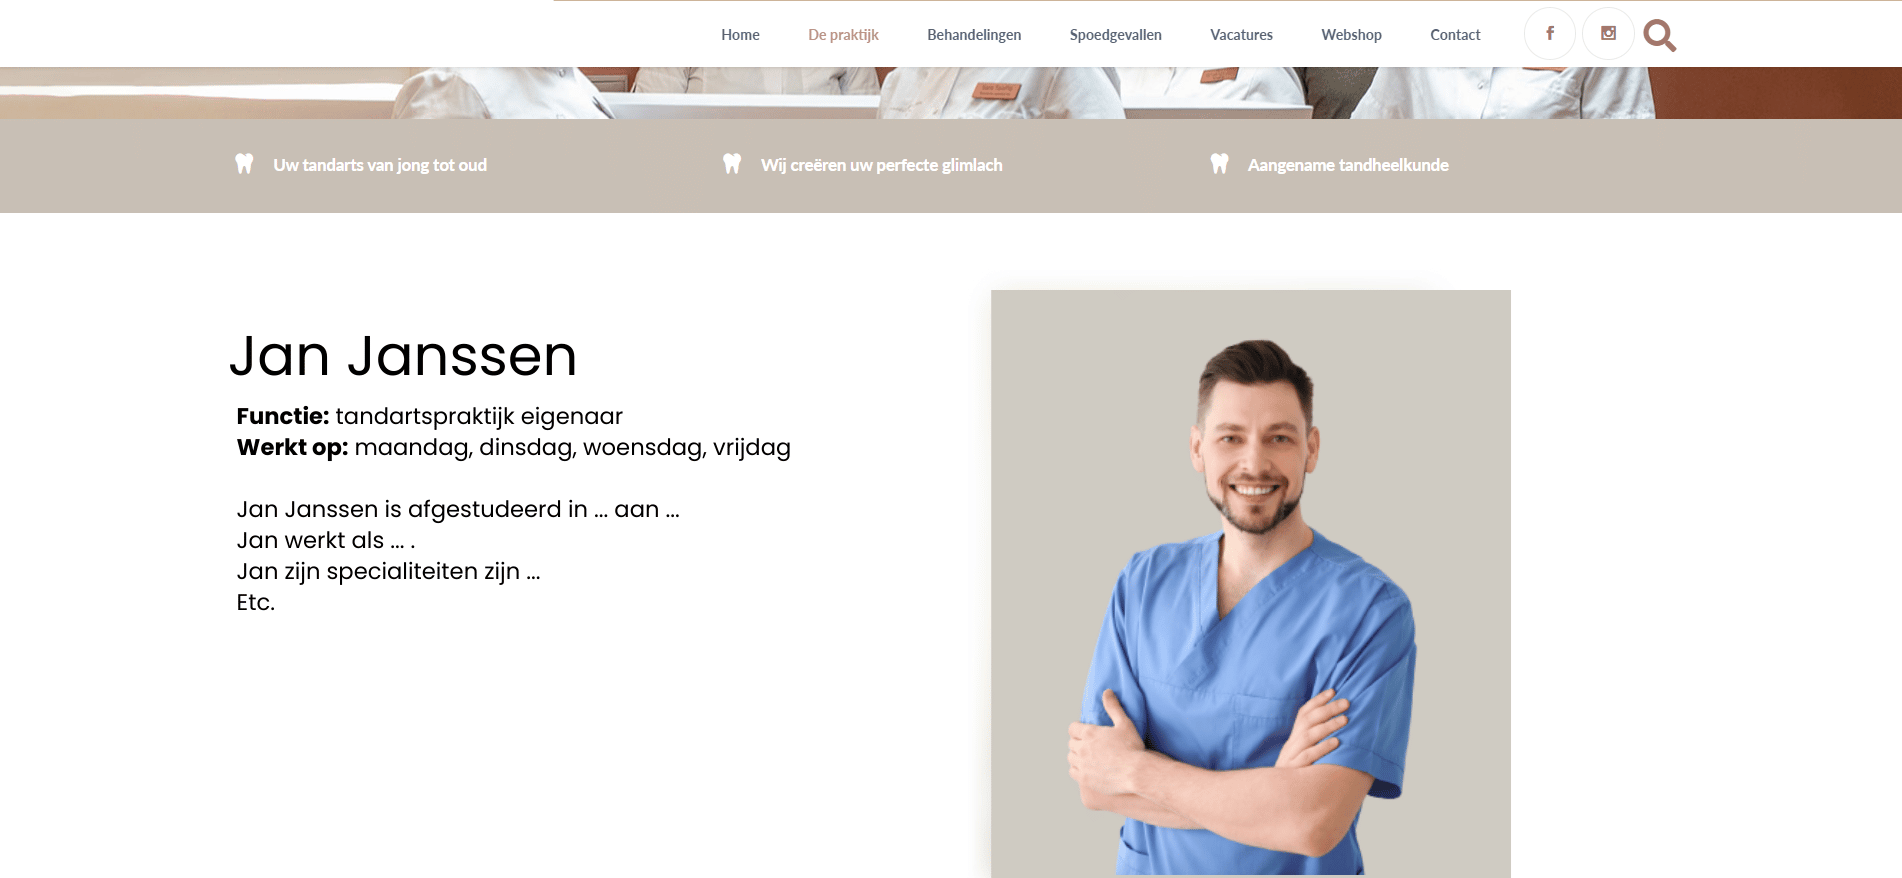 Website laten maken tandartspraktijk